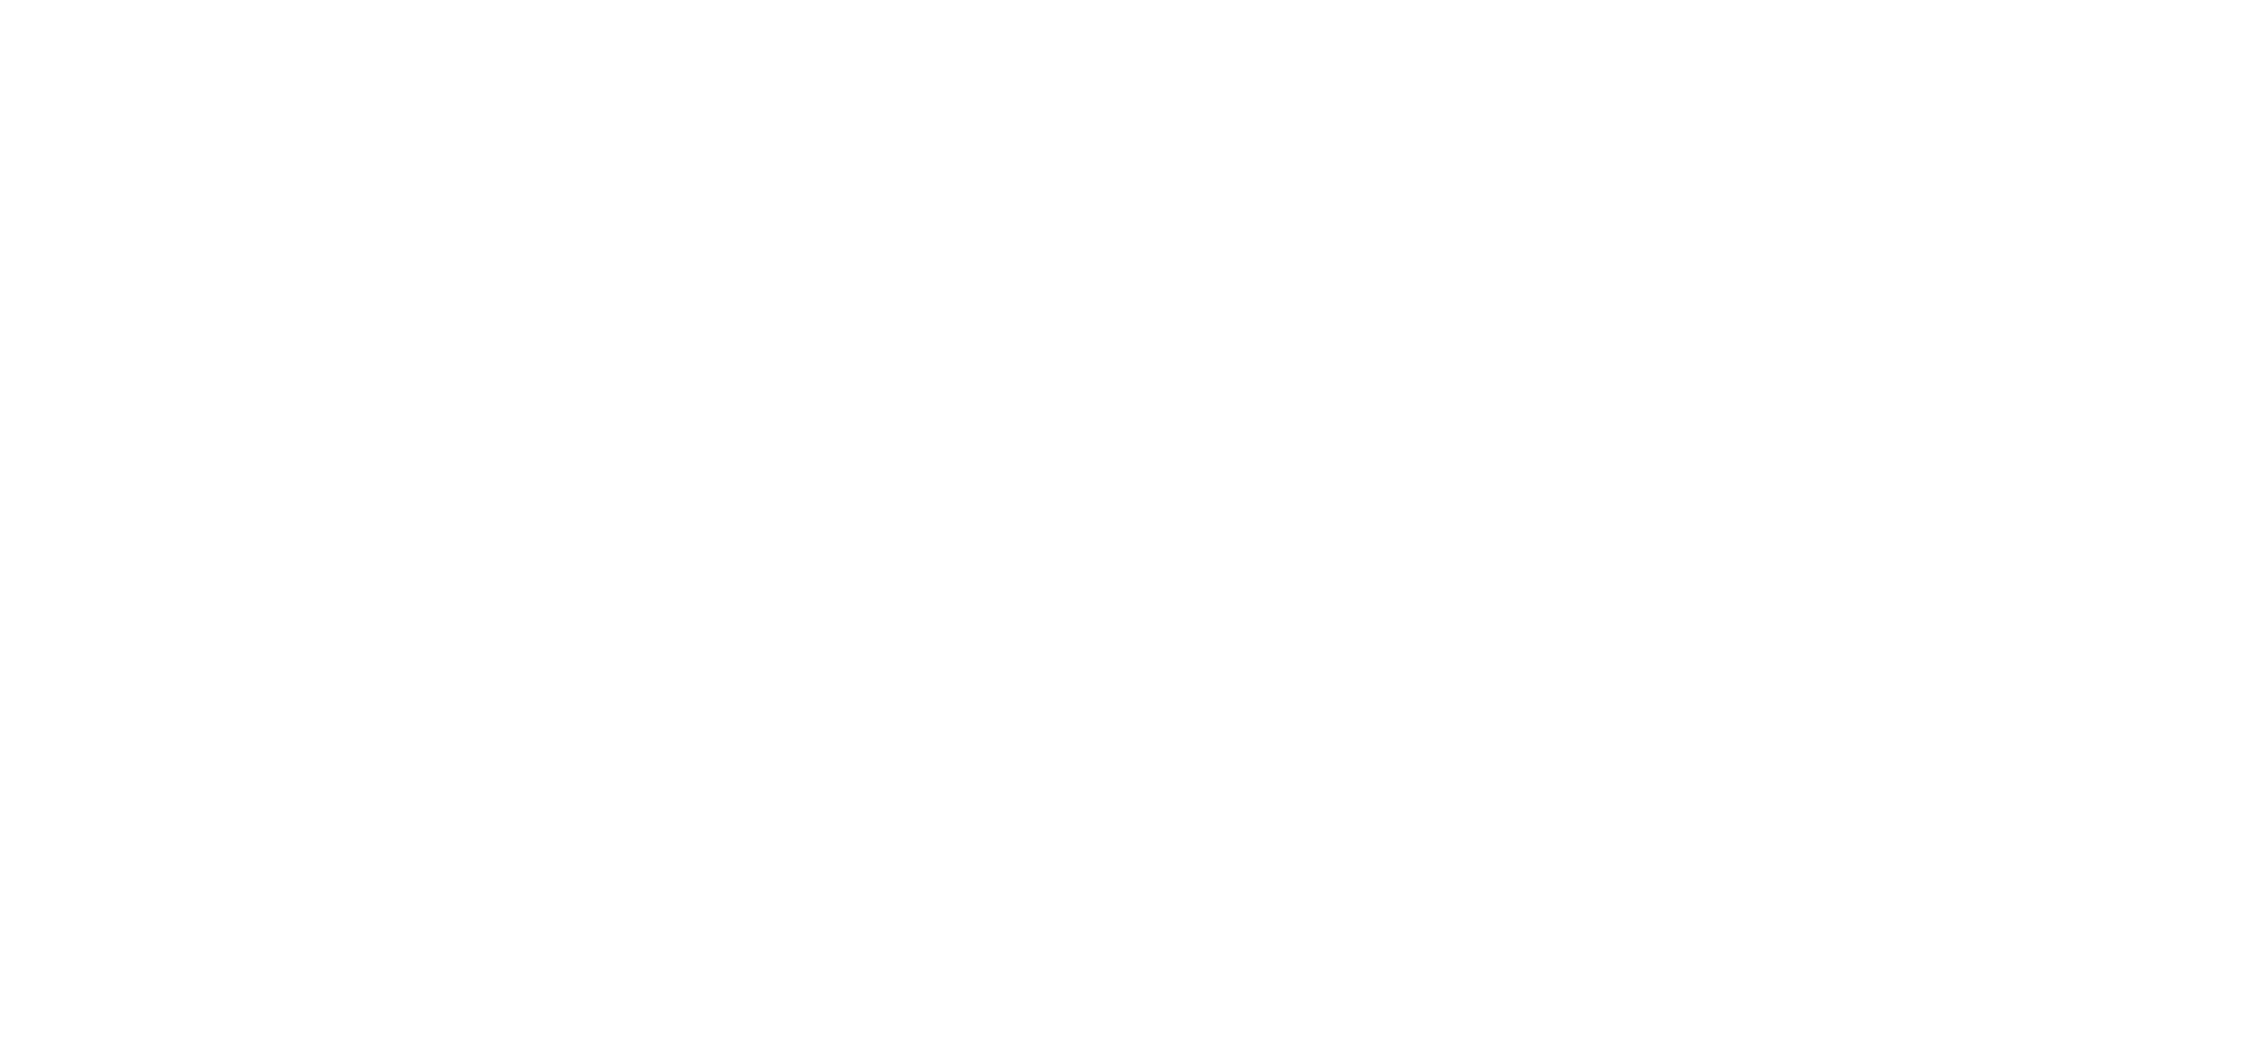 Ergin Aktaş Haberleri - İz Gazete - İzmir'in Gazetesi